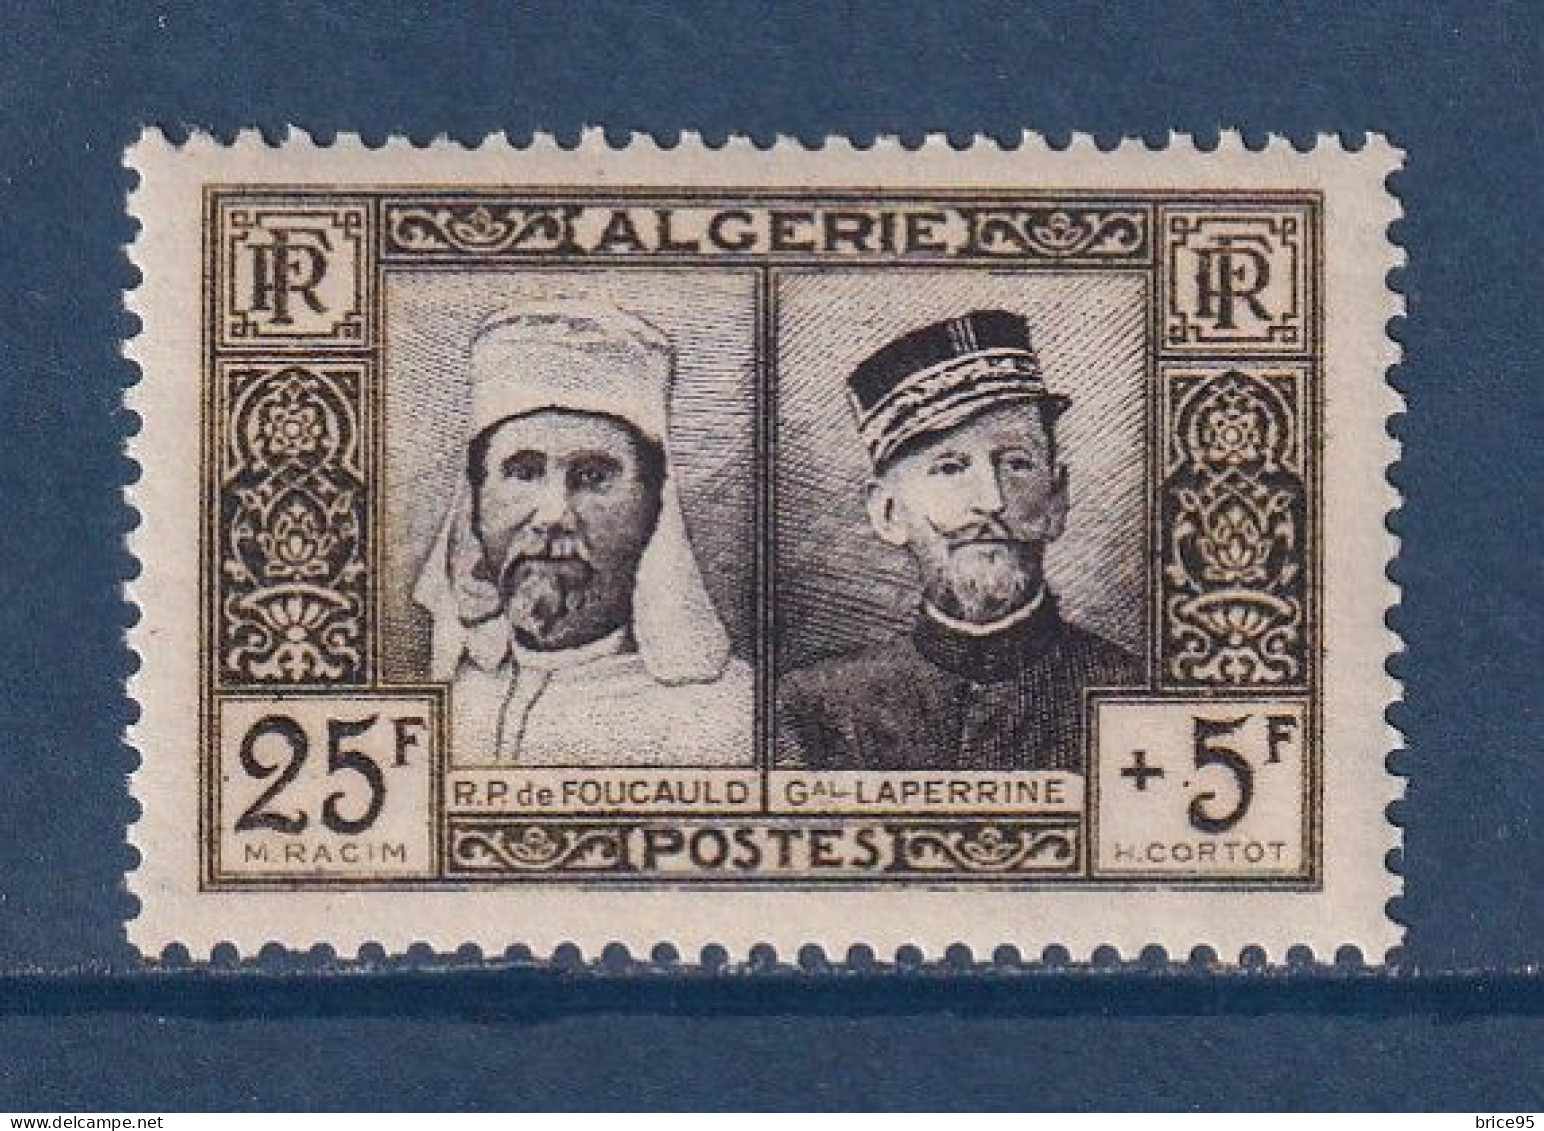 Algérie - YT N° 284 ** - Neuf Sans Charnière - 1950 - Neufs